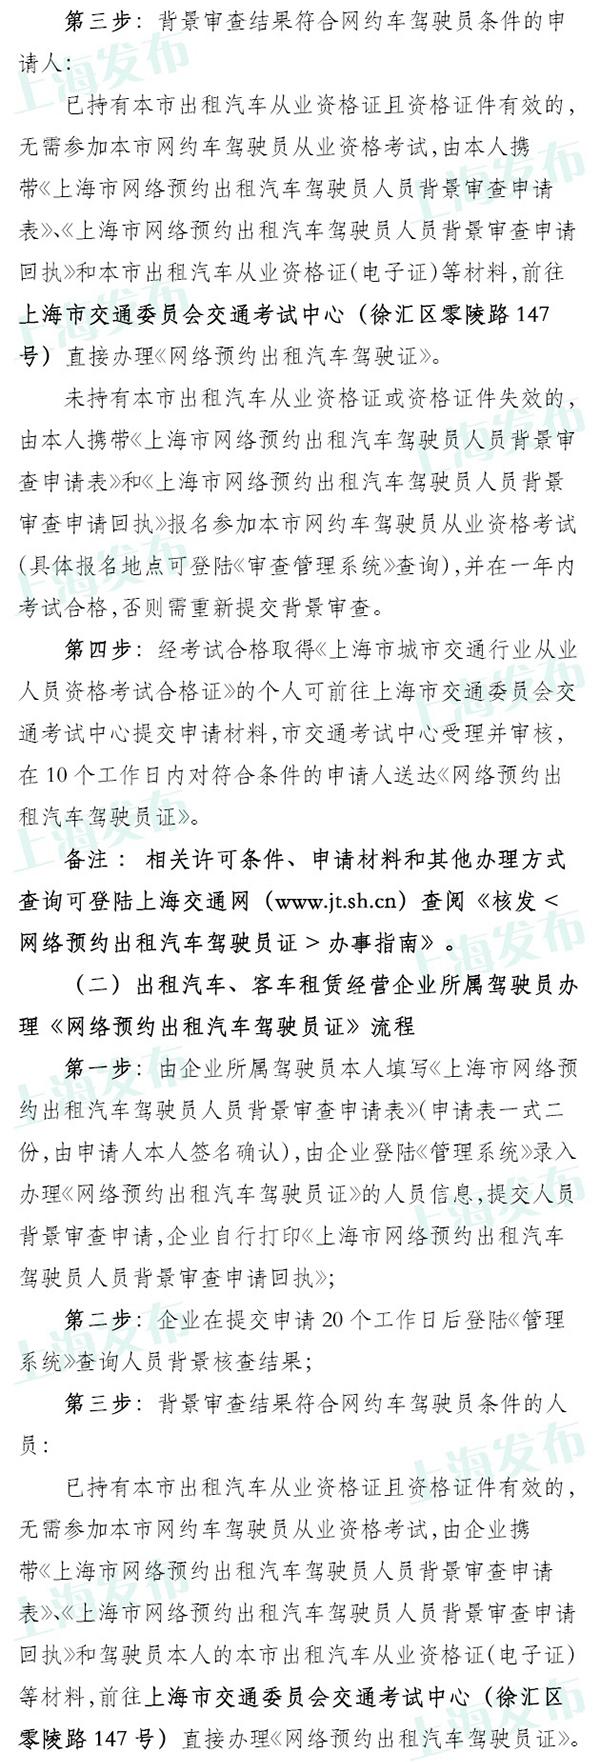 上海明起可申請網約車經營服務許可，具體流程公布